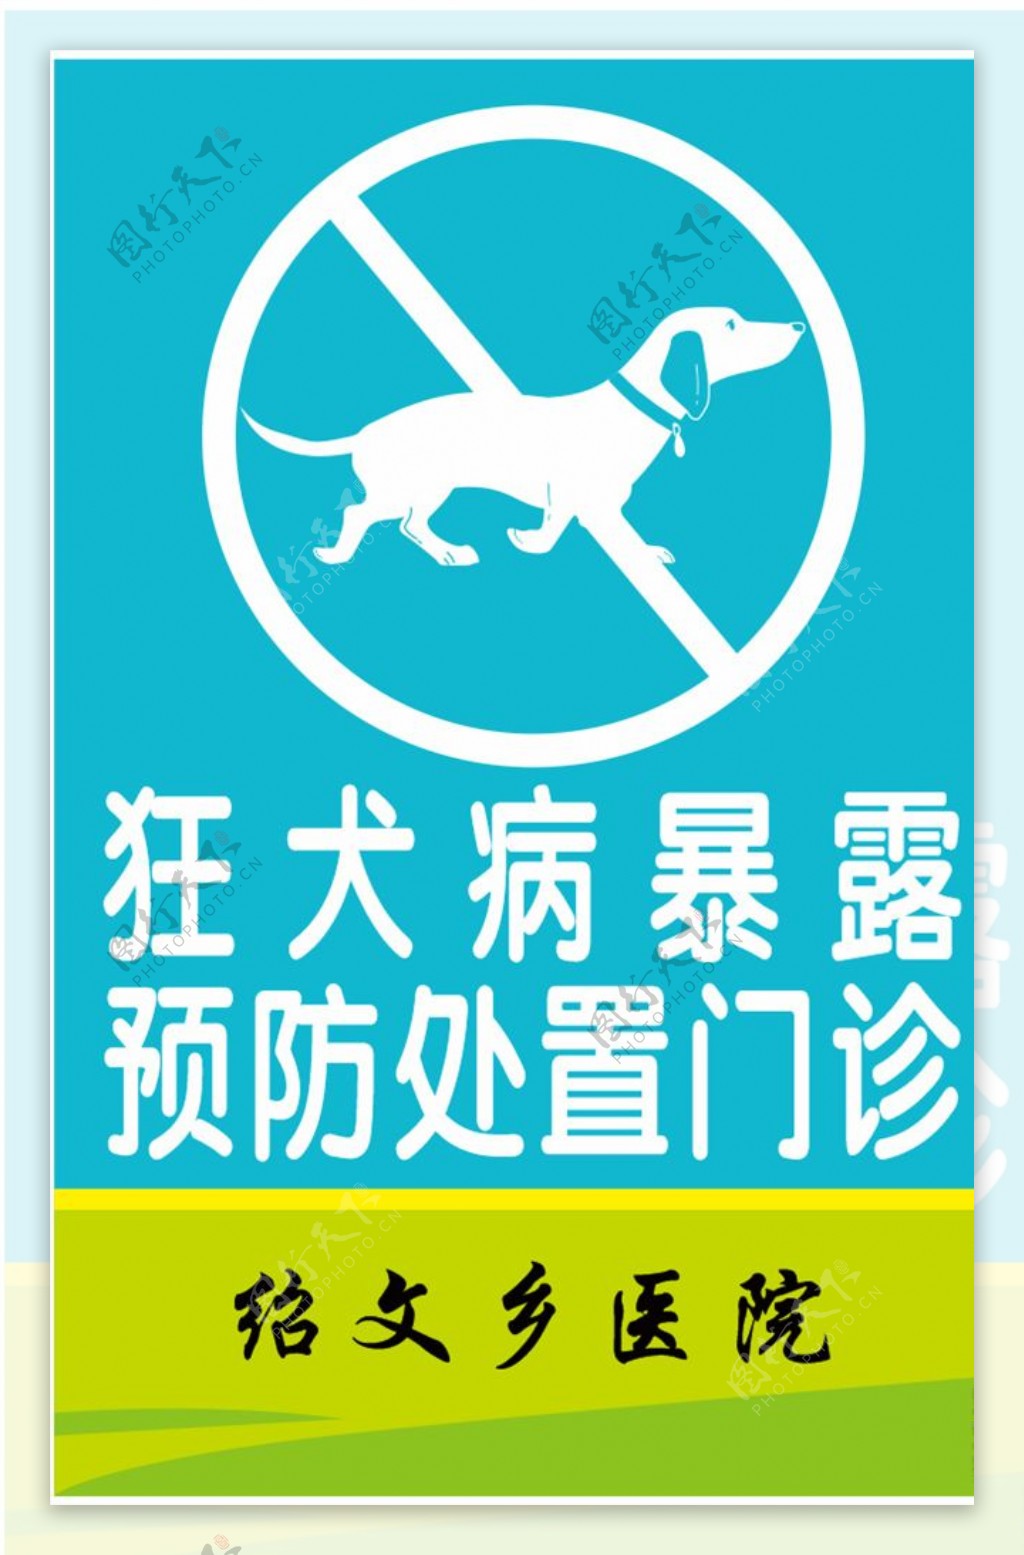 狂犬病暴露预防处置门诊标示牌